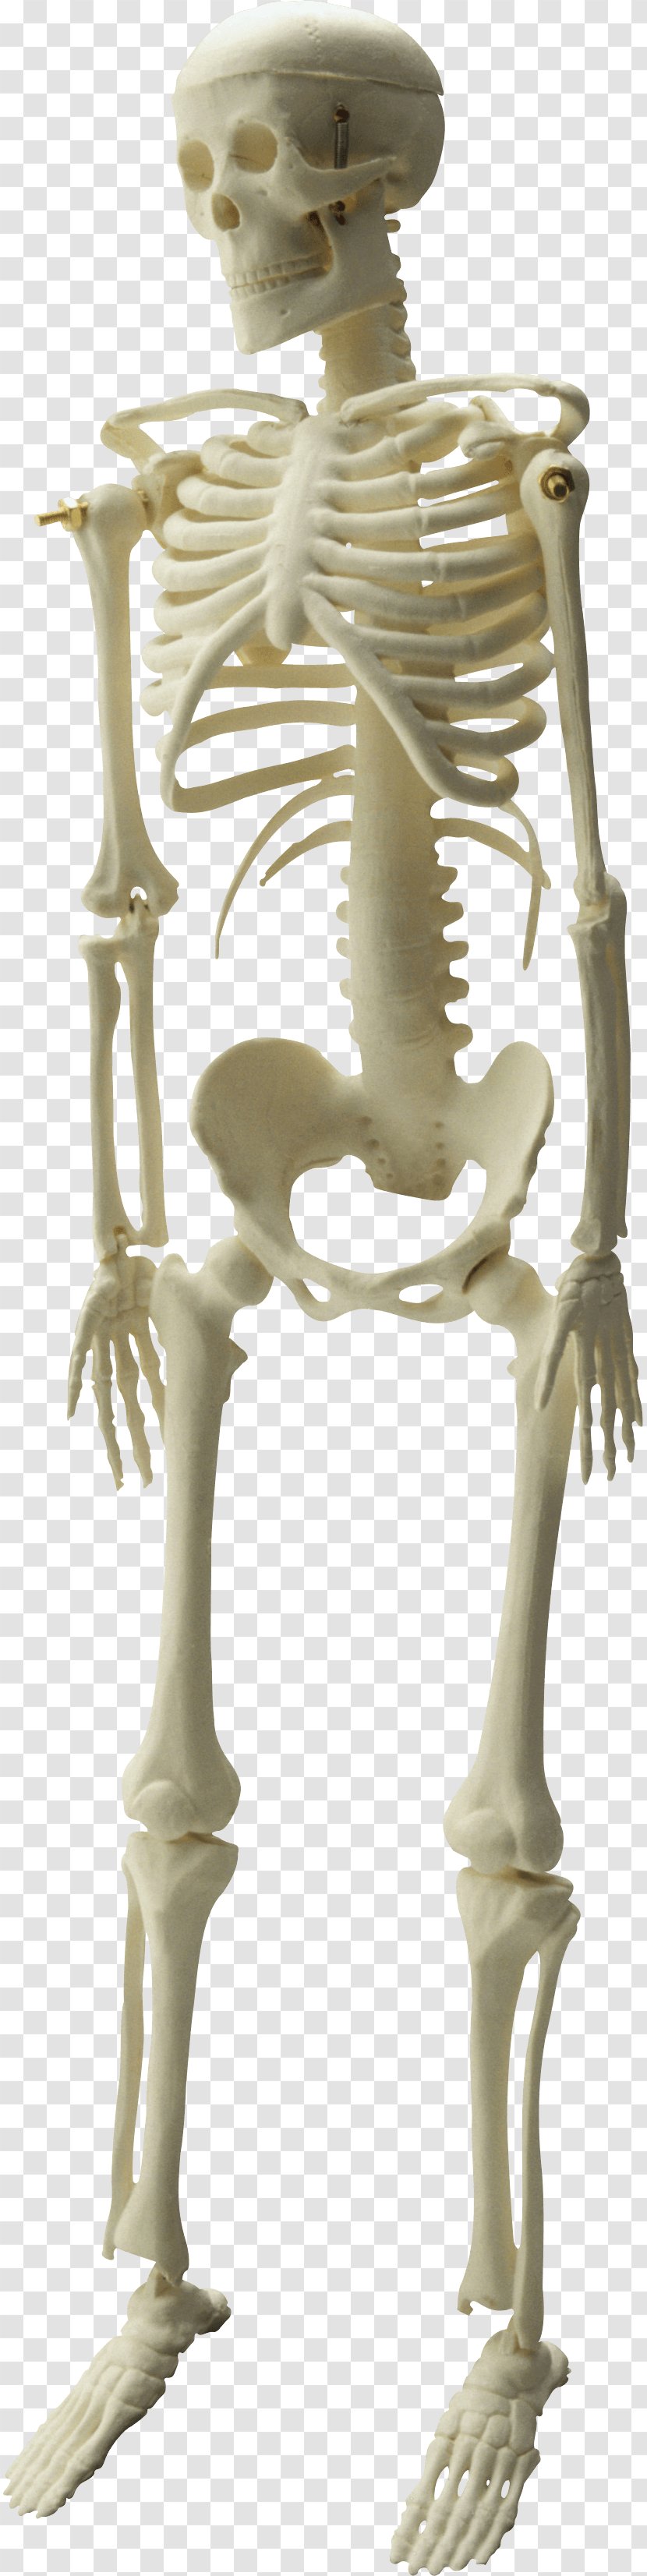 Skeleton Image File Formats Clip Art - Figurine Transparent PNG